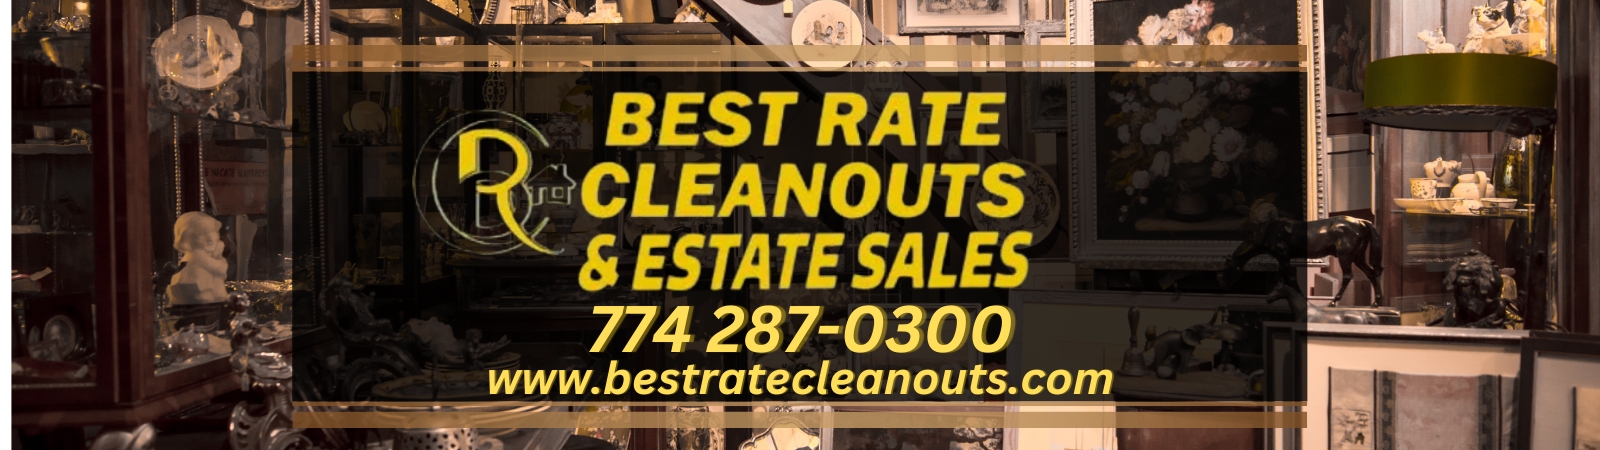 Best Rate Estate Sales & Cleanouts | AuctionNinja